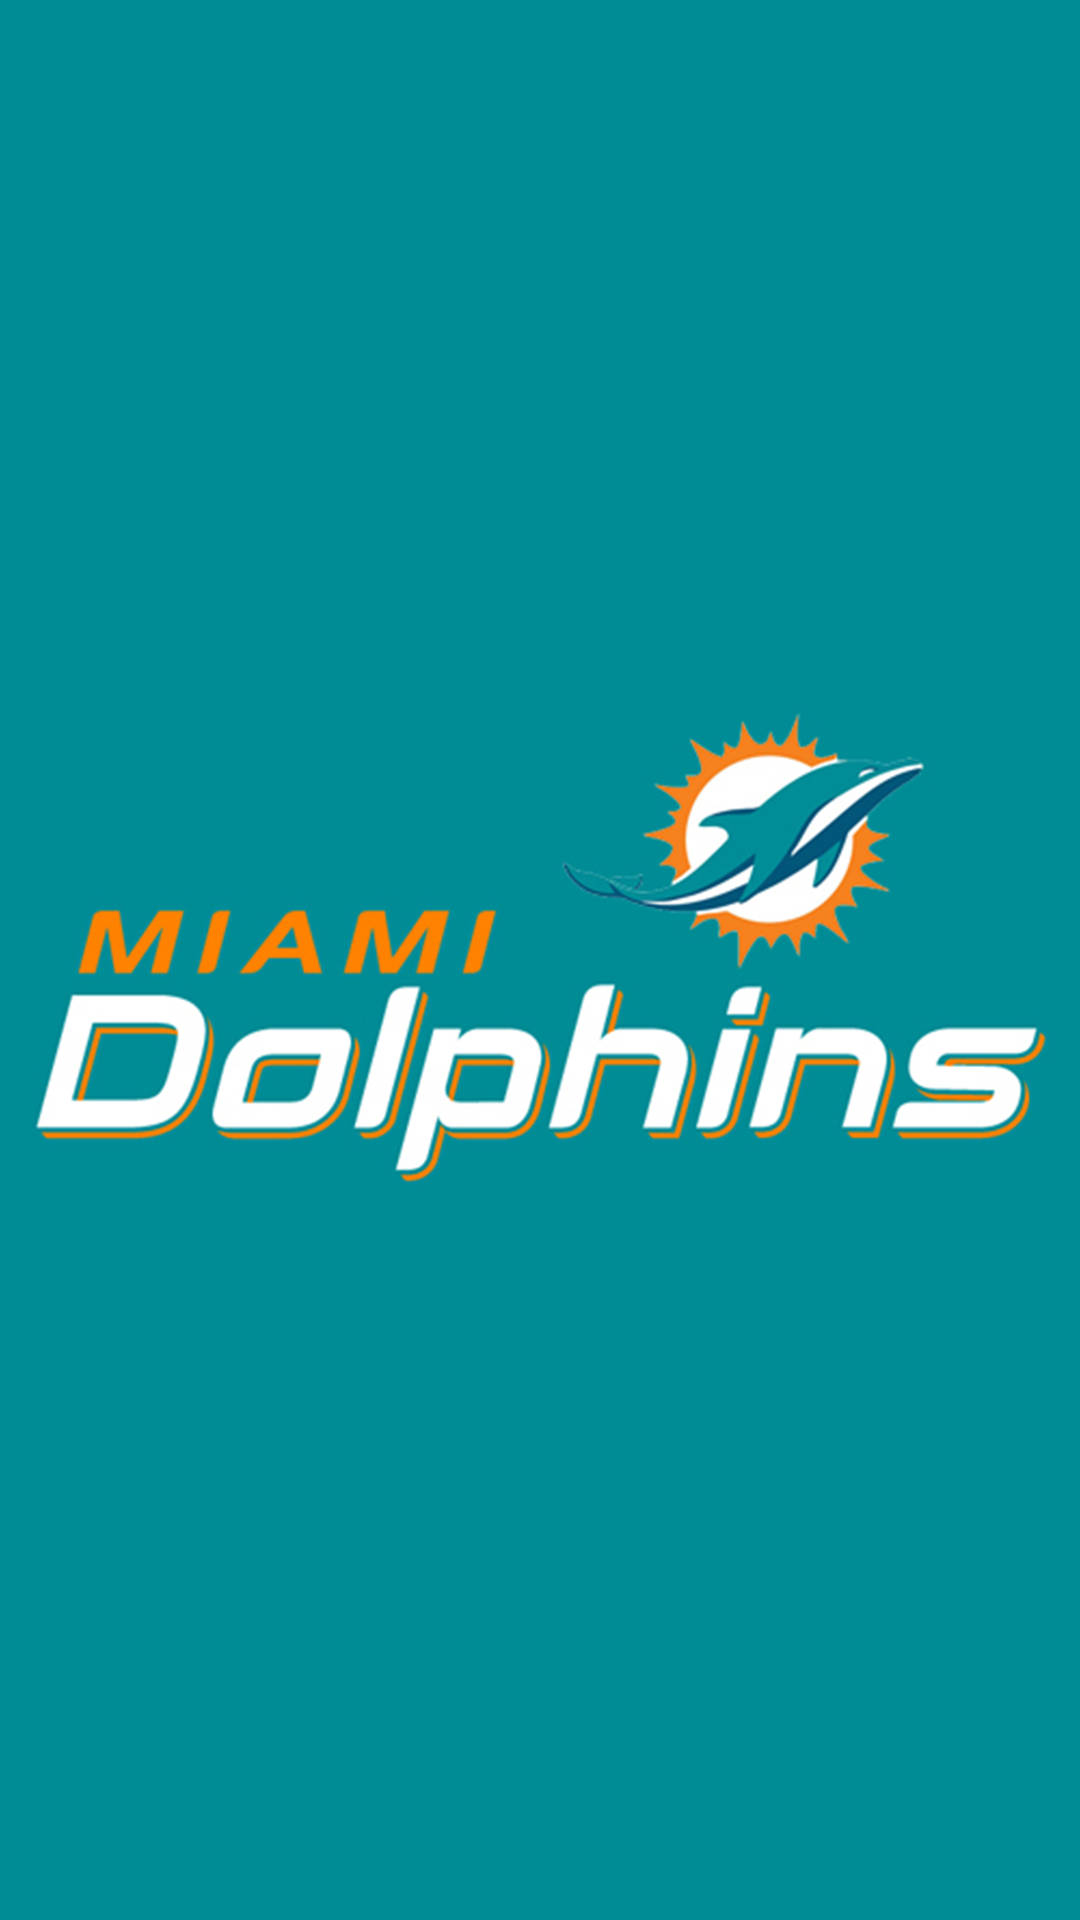 Muestratu Orgullo Por Los Miami Dolphins Con Este Fondo De Pantalla Para Smartphone. Fondo de pantalla